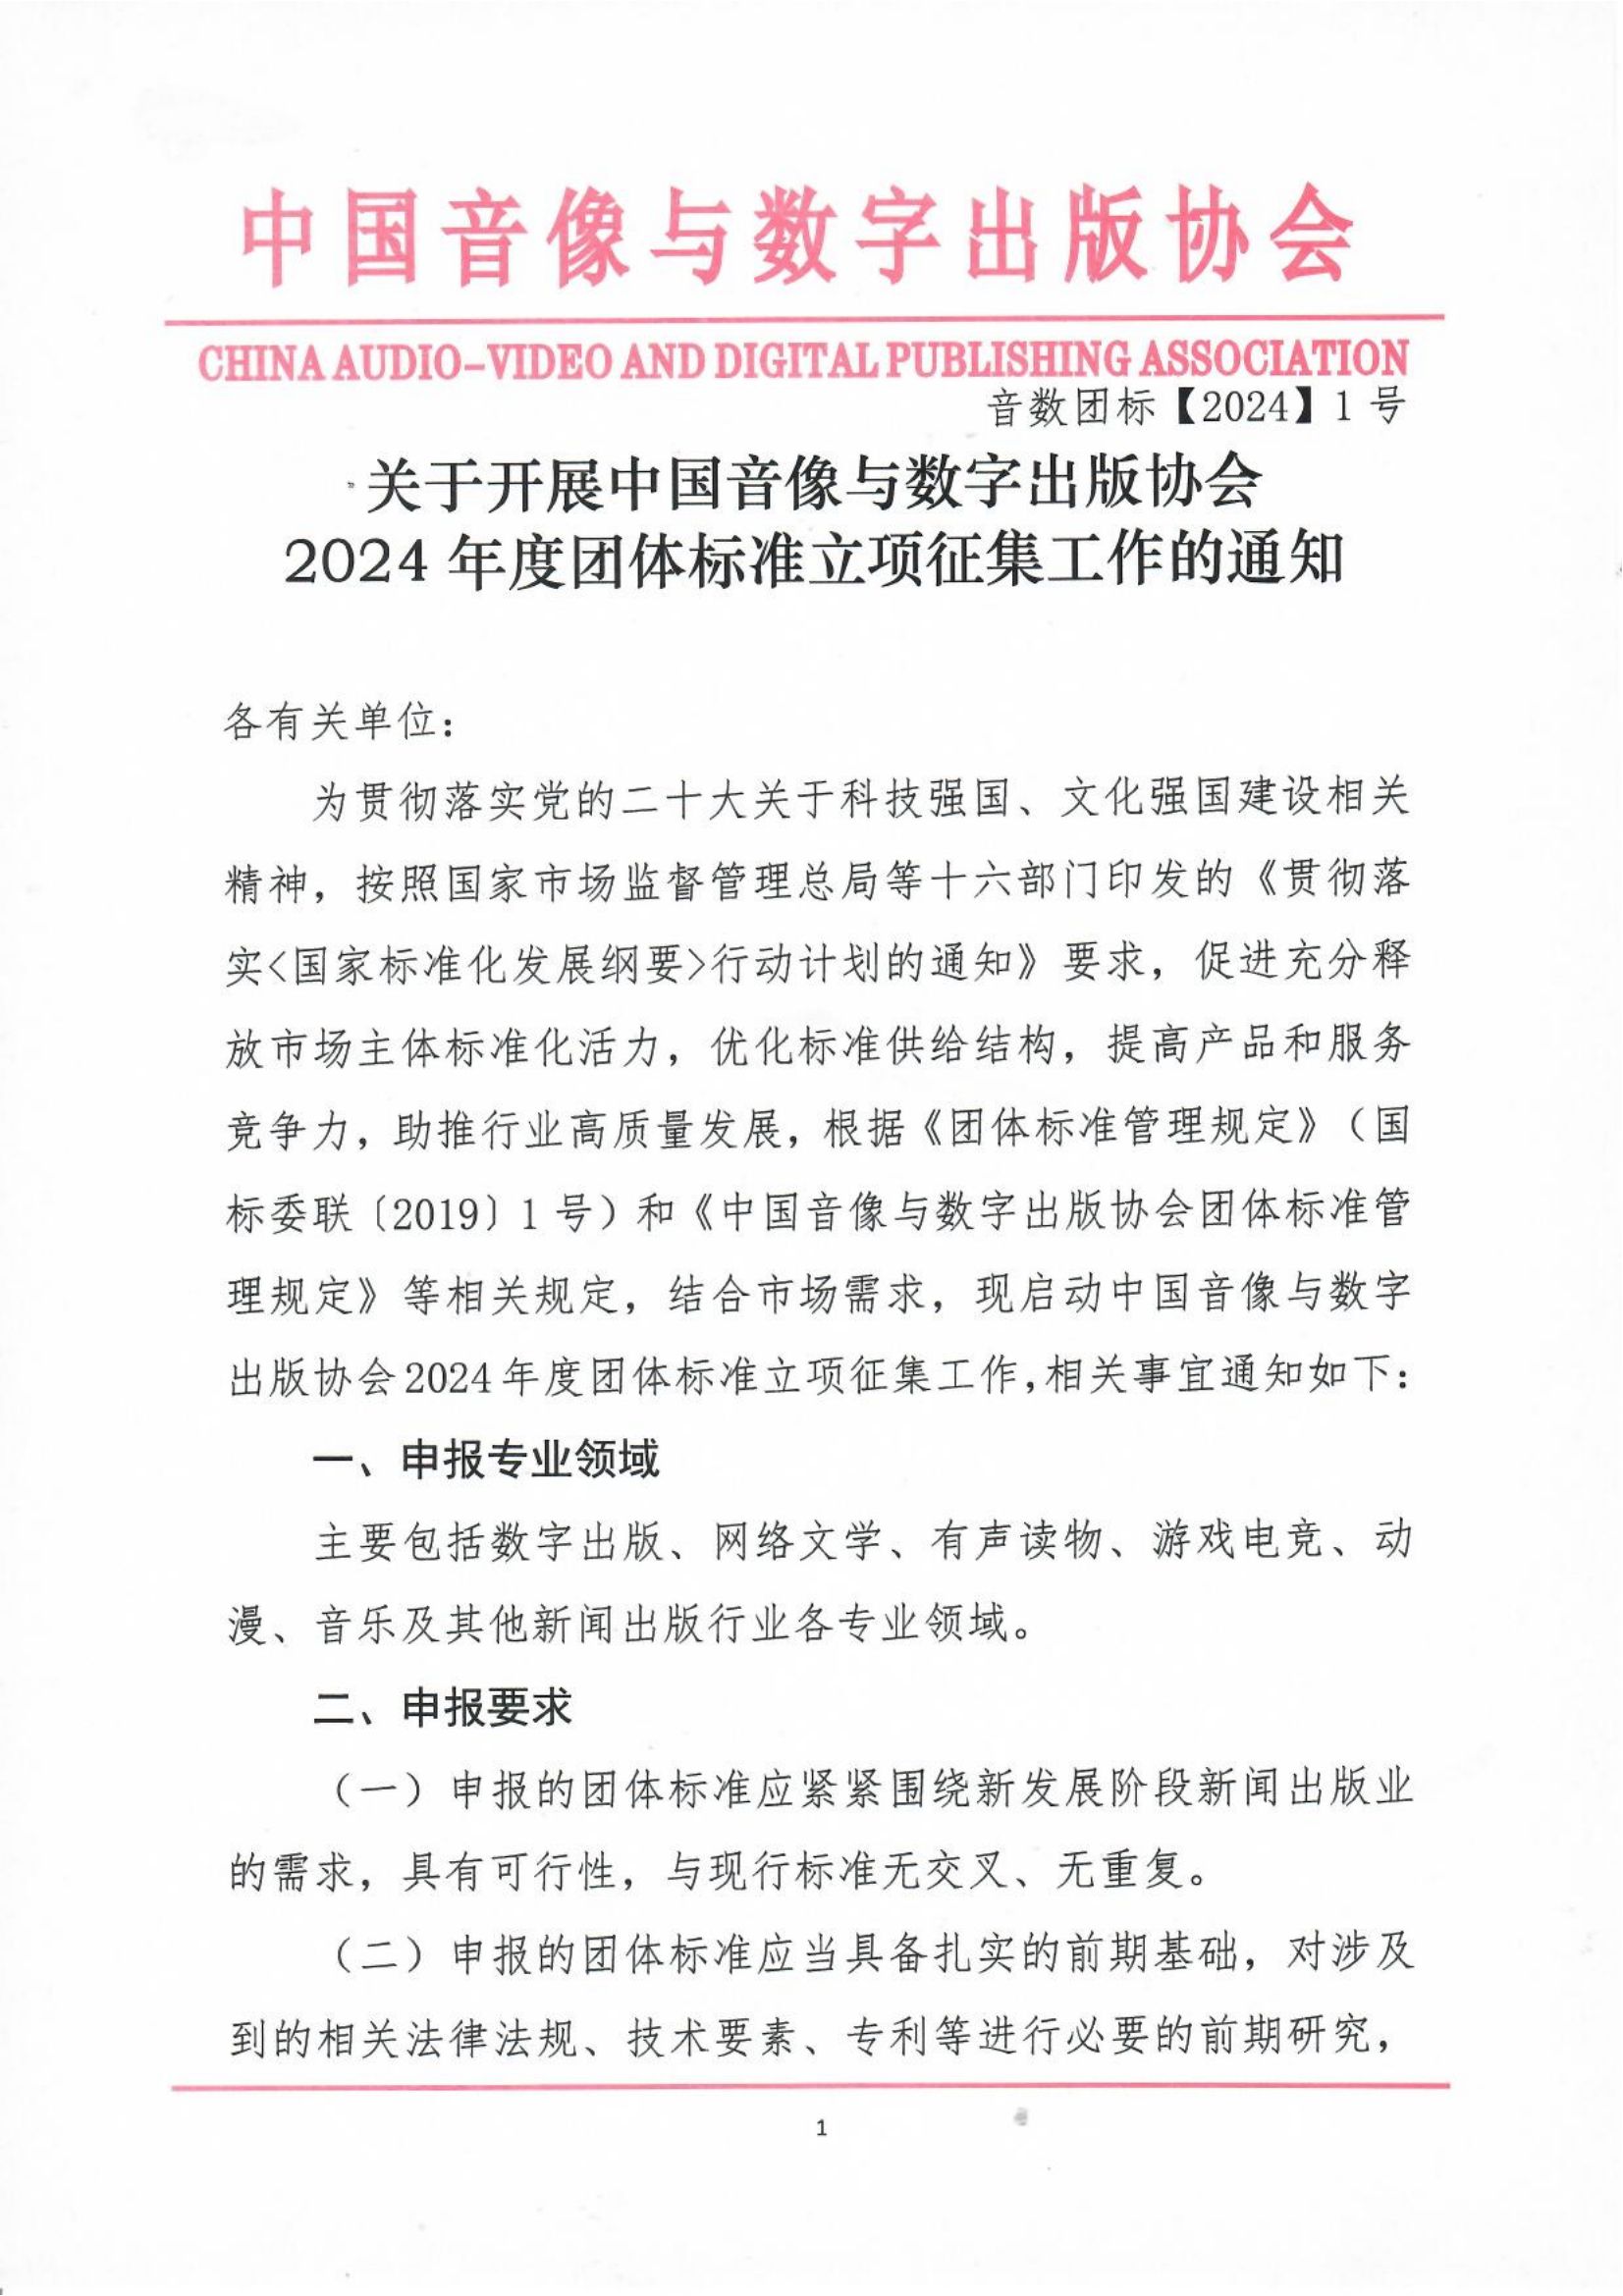 中国音像与数字出版协会关于开展2024年度团体标准立项征集工作的通知_00.png